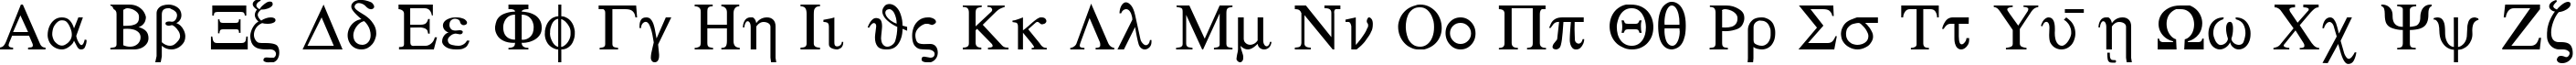 Пример написания английского алфавита шрифтом Sgreek Medium